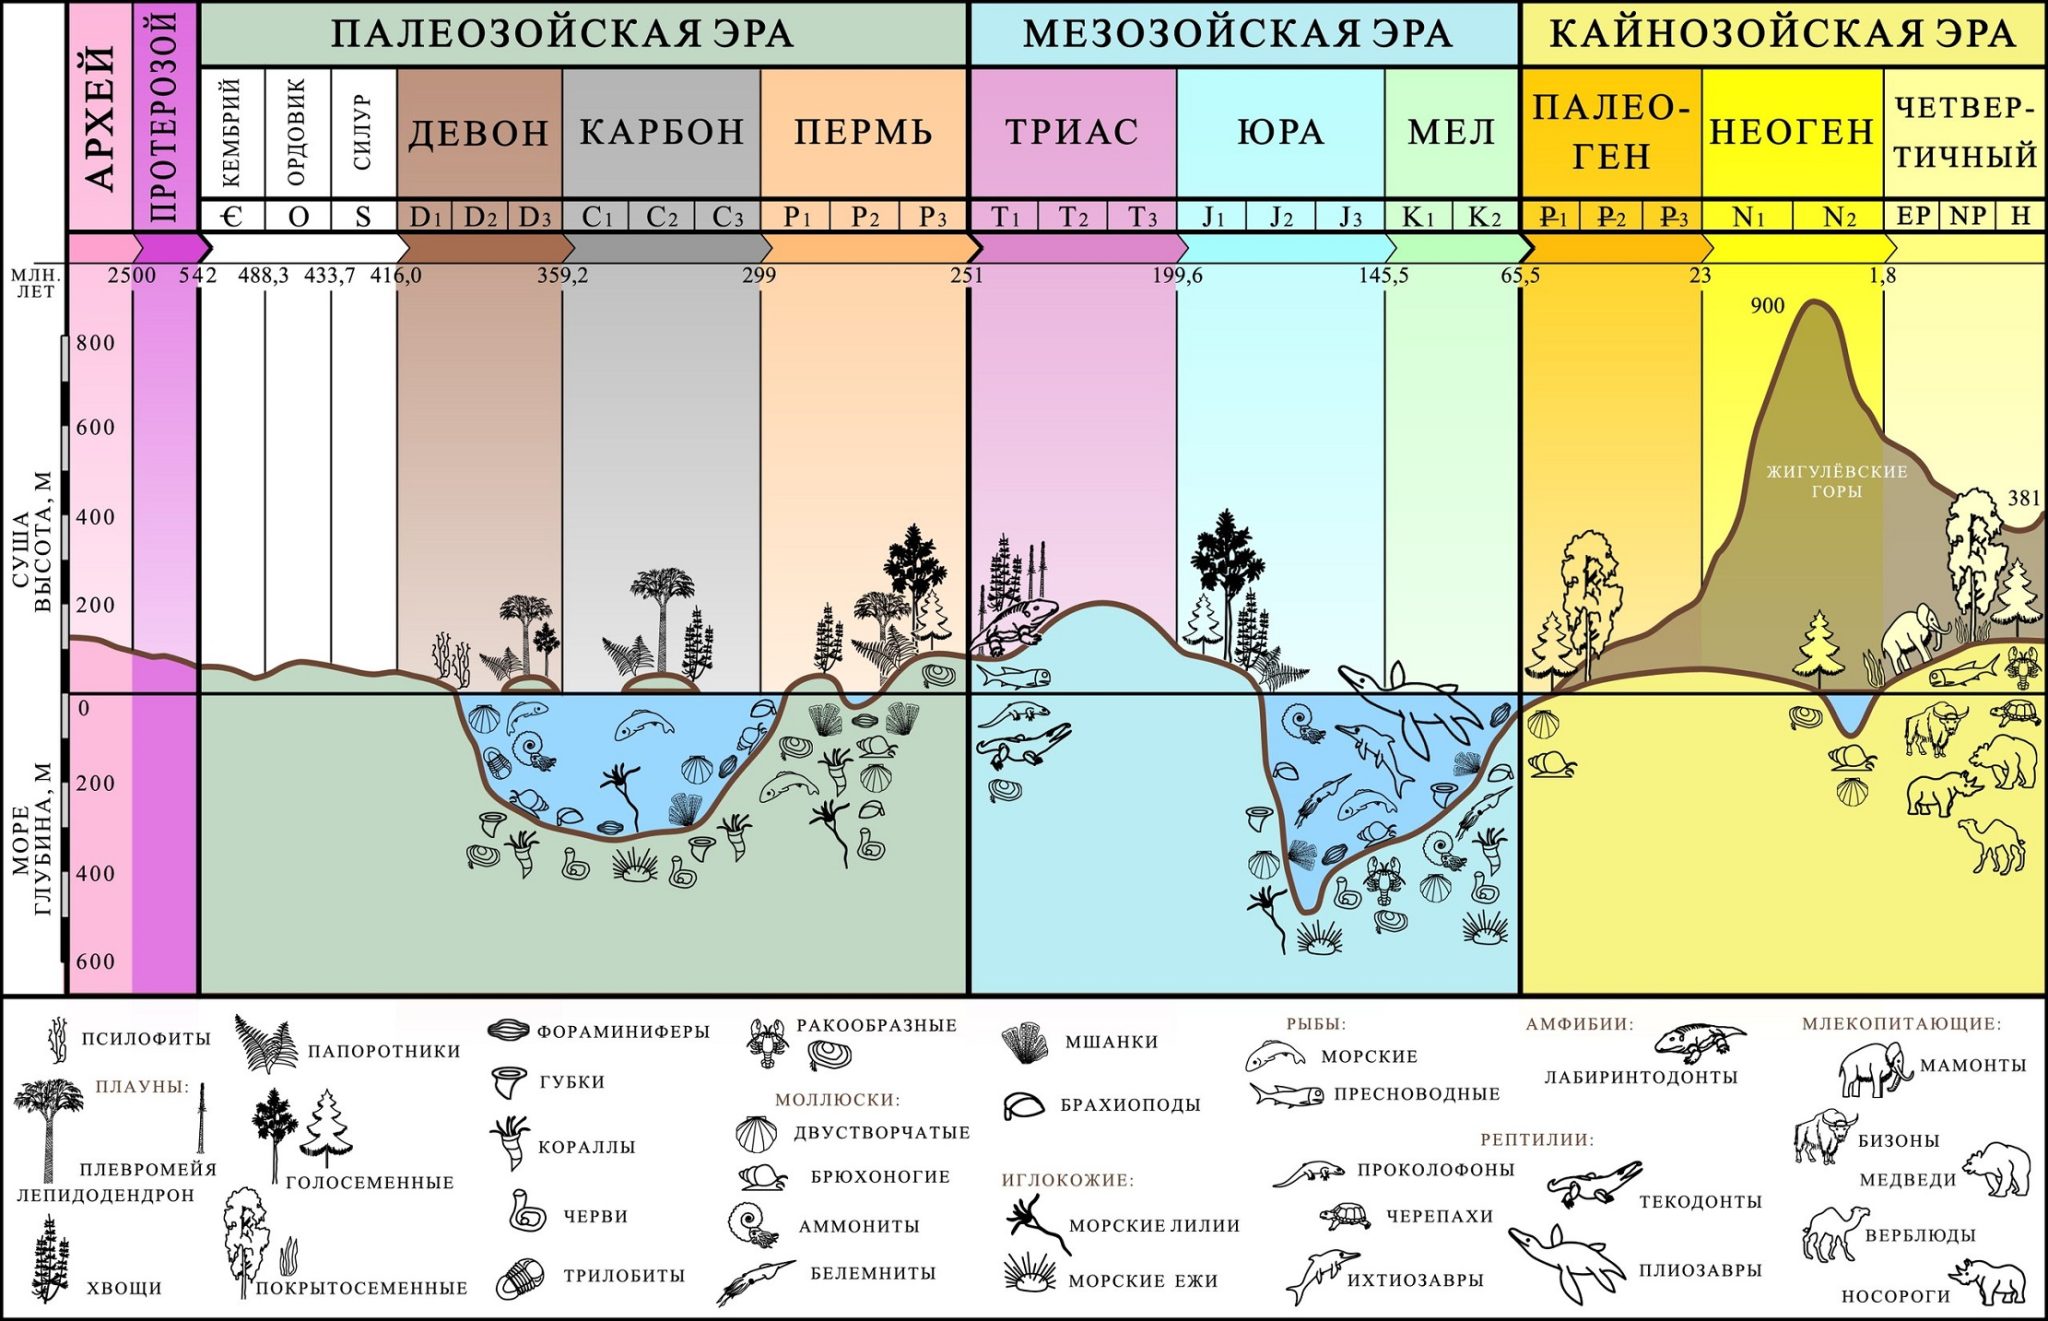 Зимний периуд или период. Периоды развития земли в хронологическом порядке. Геологический этап развития земли. Геологическая история земли в хронологическом порядке таблица. Эволюция биосферы эры и периоды.